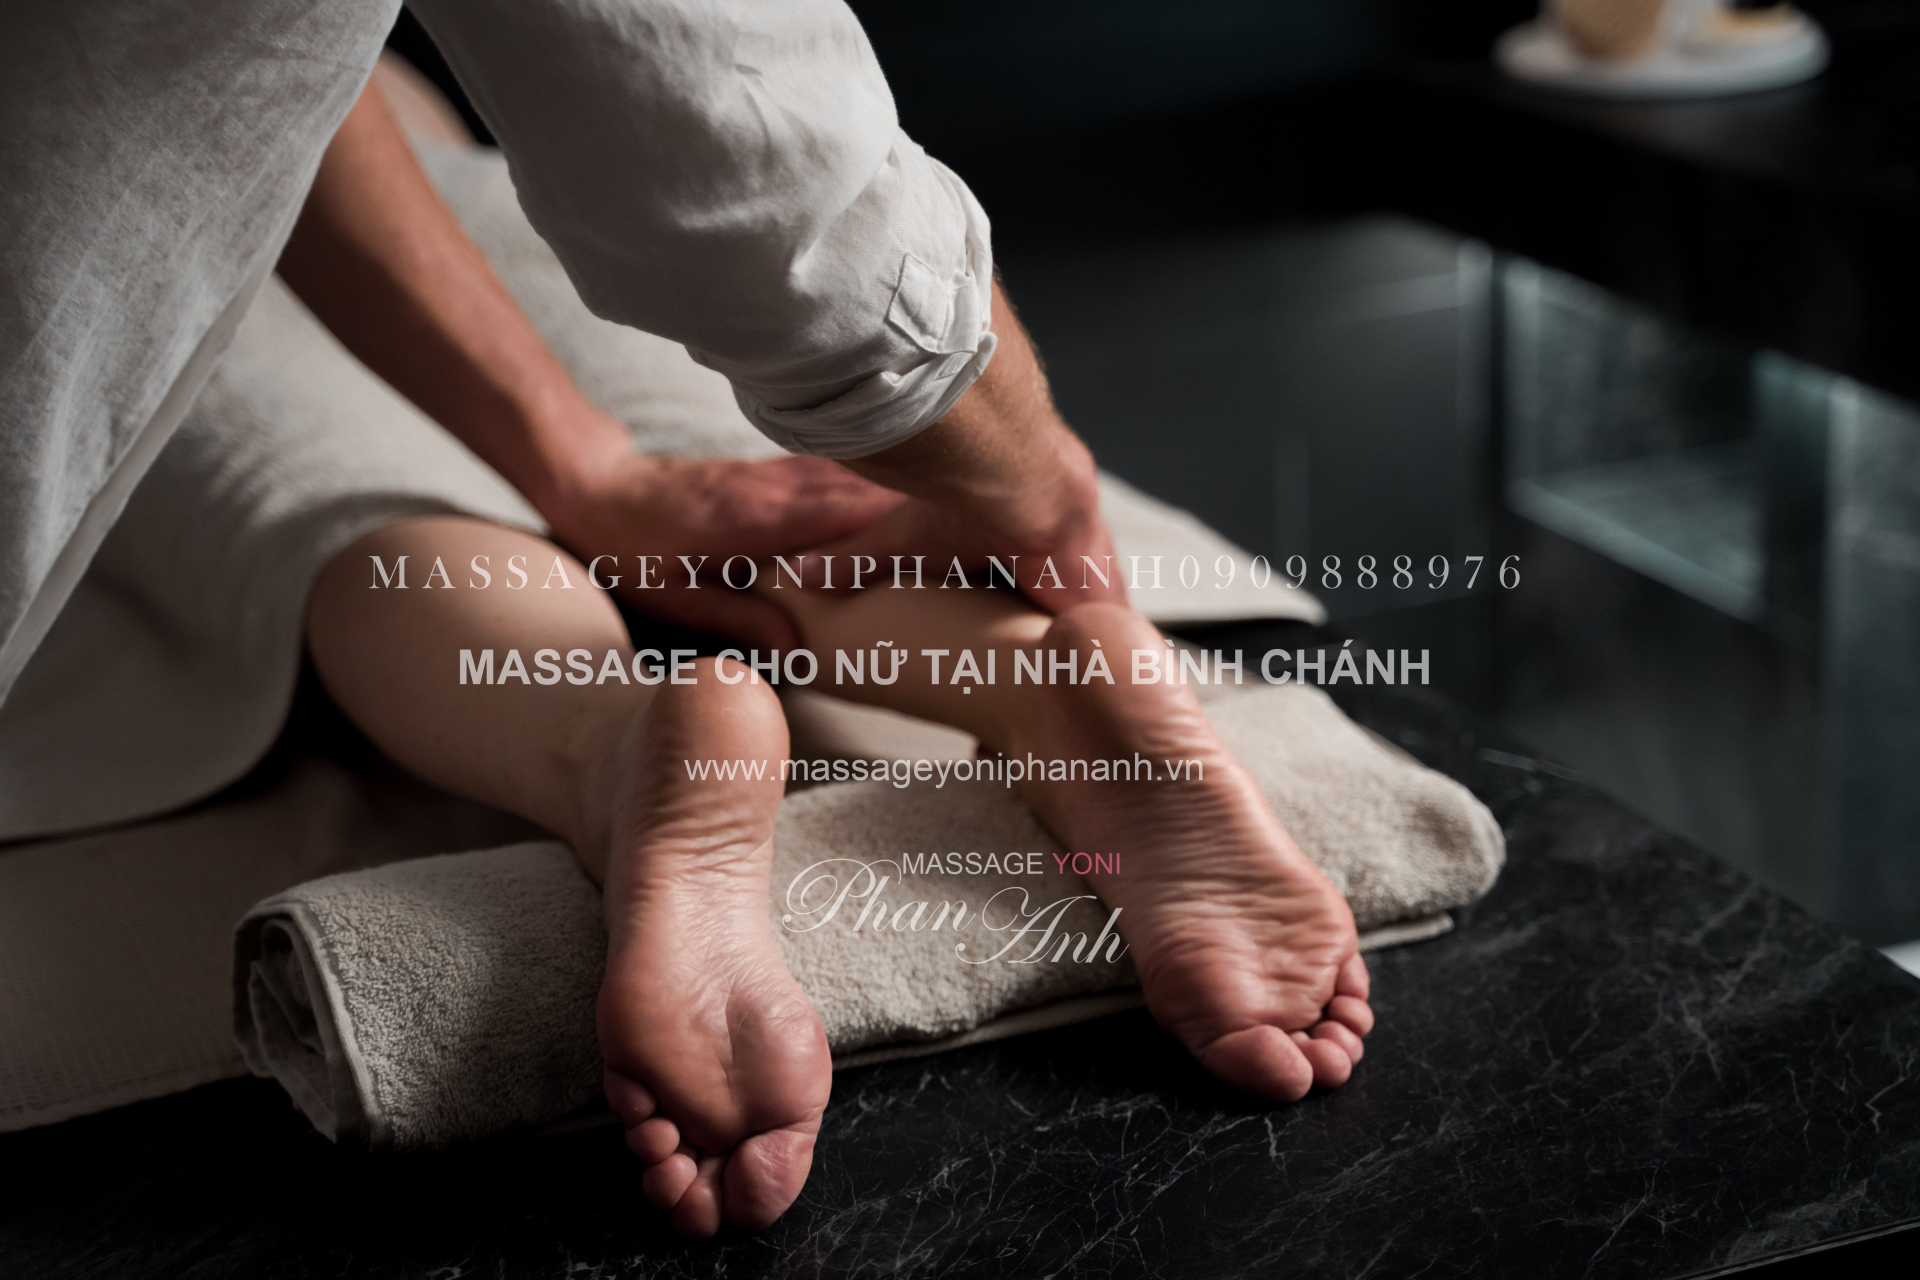 massage cho nữ tại nhà Bình Chánh